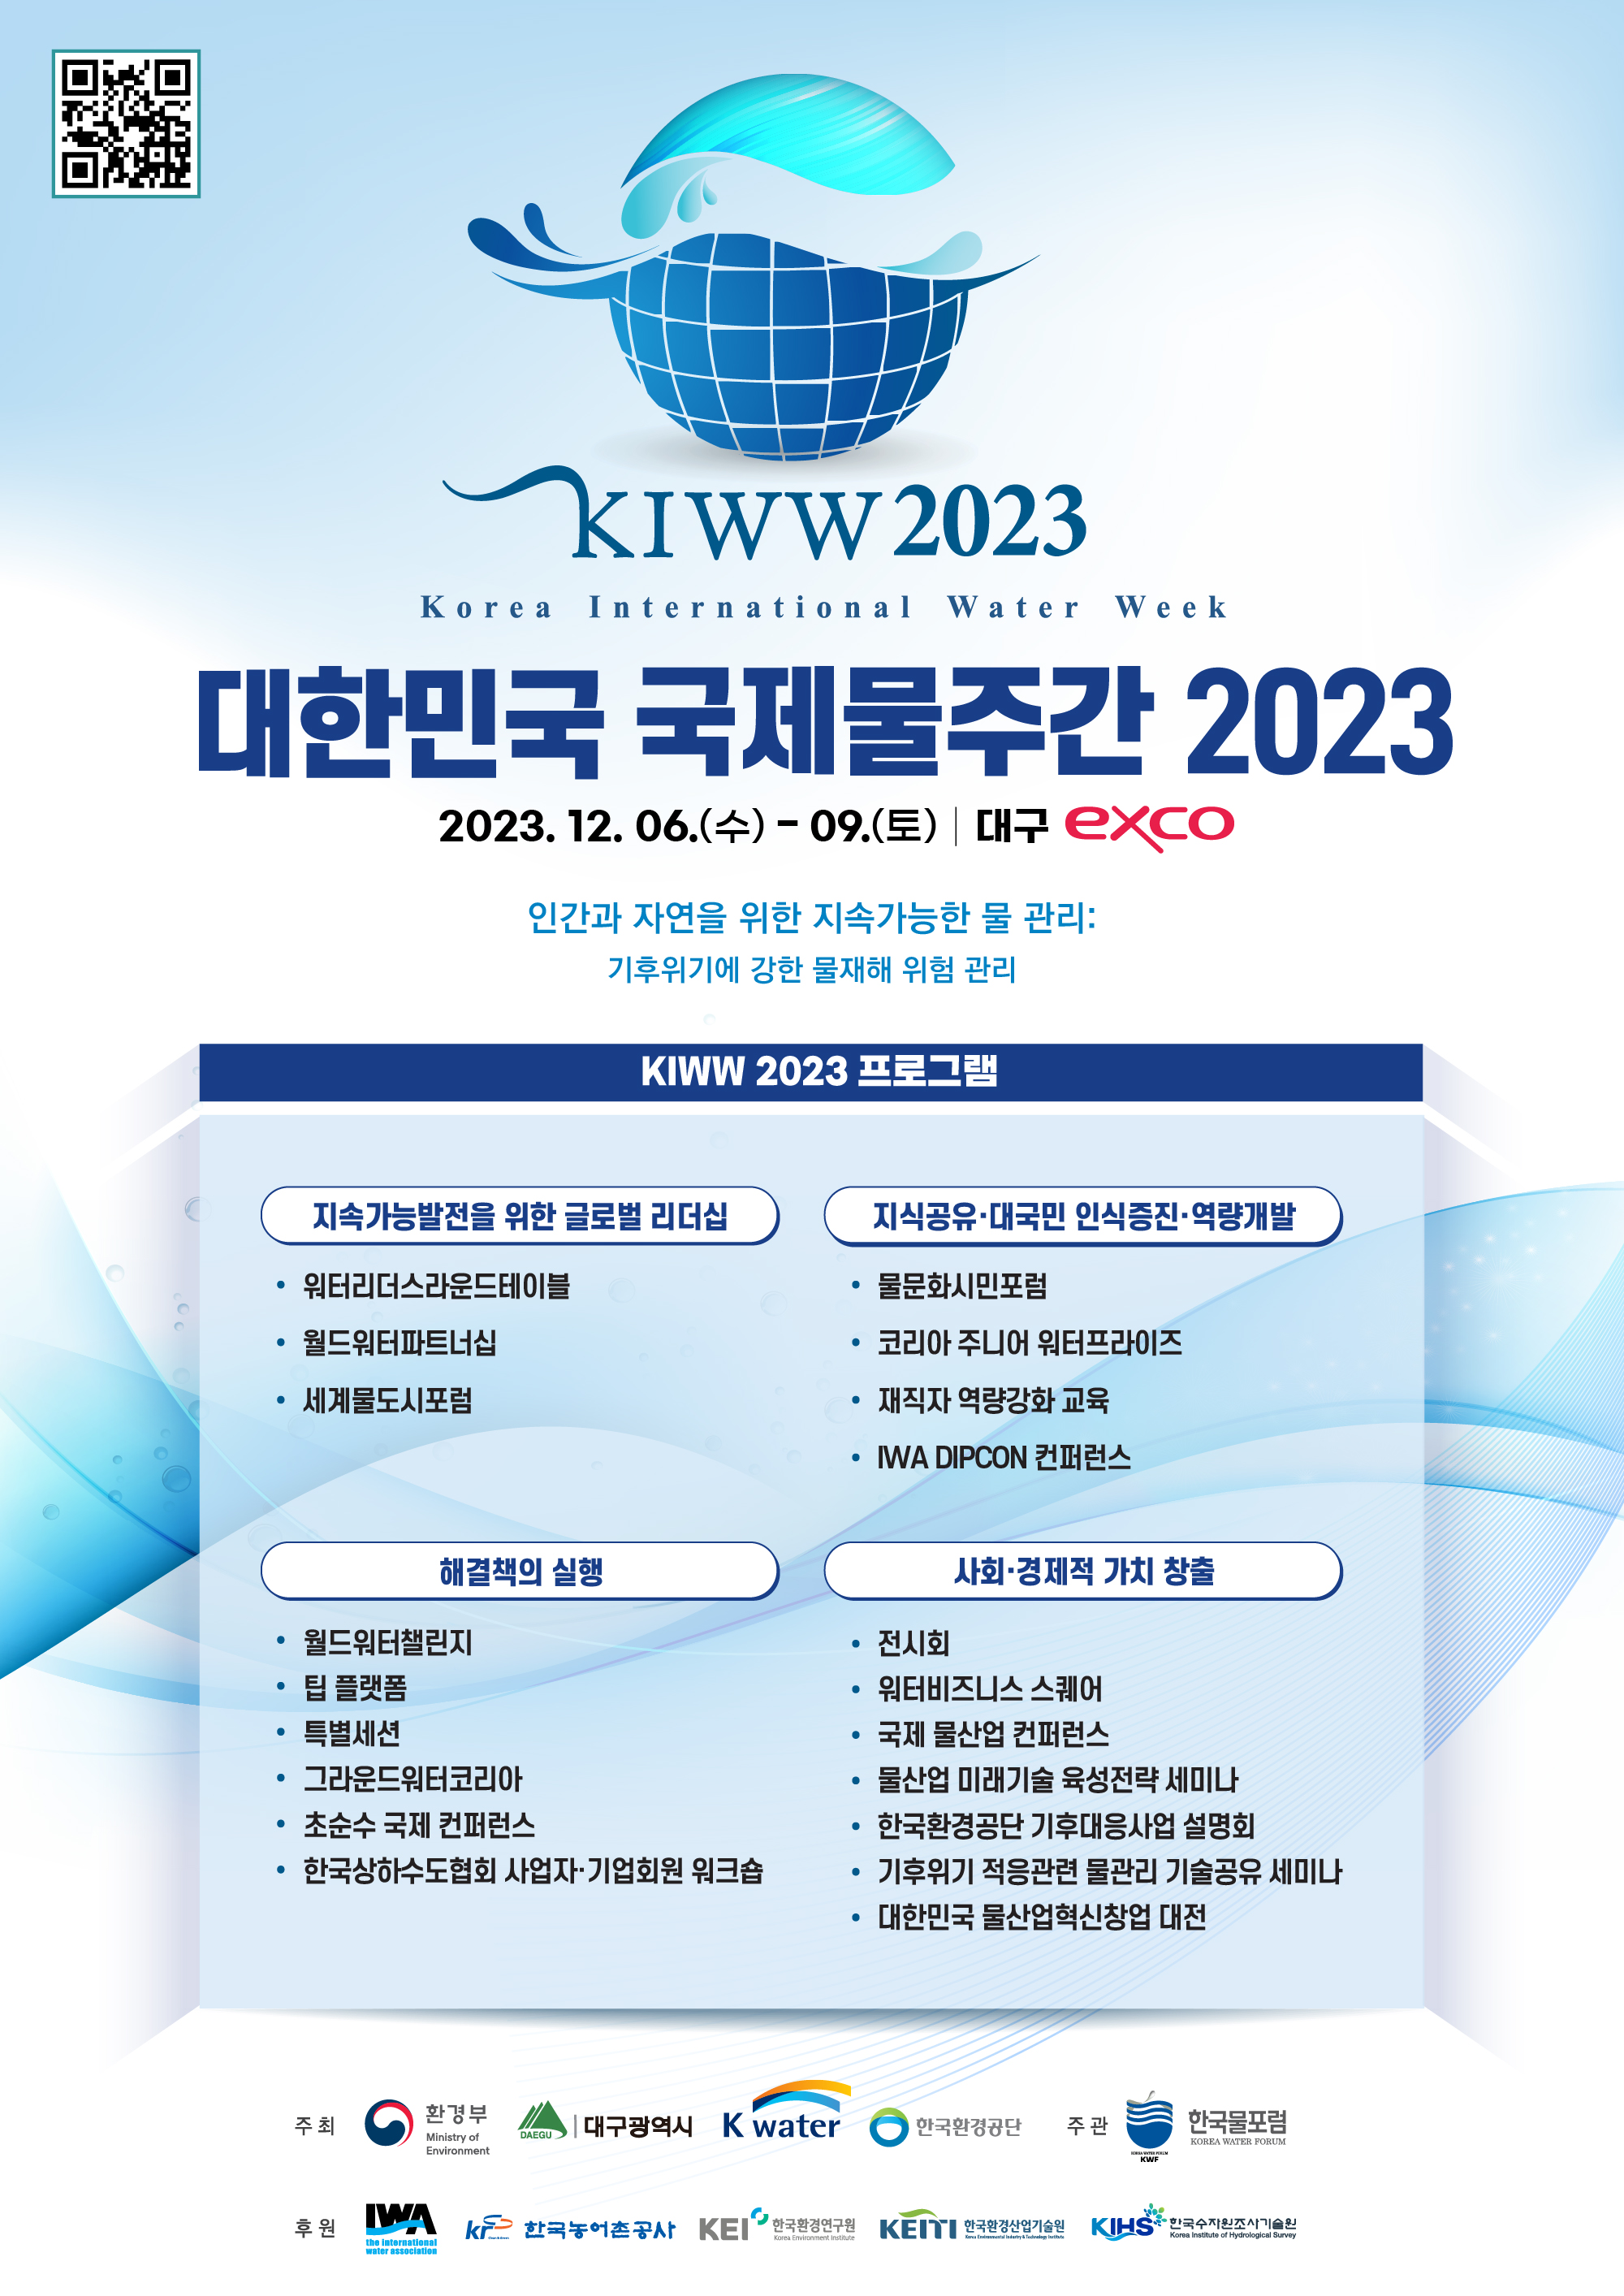 QR코드 대한민국 국제물주간(KIWW)2023 https://kiww.org / KIWW2023 Korea International Water Week/ 대한민국 국제물주간 2023 / 2023.12. 06(수) - 09.(토) 대구 exco / 인간과 자연을 위한 지속간으한 물 관리 : 기후위기에 강한 물재해 위험 관리 / KIWW 2023 프로그램 / 지속간으발전을 위한 글로벌 리더십:워터리더스라운드테이블, 월드워터파트너십, 세계물도시포럼 / 지식공유·대국민 인식증진·역량개발:물문화시민포럼, 코리아 주니어 워터프라이즈, 재직자 역량강화 교육, IWA DIPCON 컨퍼런스 / 해결책의 실행:월드워터챌린지, 팁 플랫폼, 특별세션, 그라운드워터코리아, 초순수 국제 컨퍼런스, 한국상하수도협회 사업자·기업회원 워크숍 / 사회·경제적 가치 창출:전시회, 워터비즈니스 스퀘어, 국제 물산업 컨퍼런스, 물산업 미래기술 육성전략 세미나, 한국환경공단 기후대응사업 설명회, 기후위기 적응관련 물관리 기술공유 세미나, 대한민국 물산업혁신창업 대전 / 주최:환경부,대구광역시,Kwater, 한국환경공단 / 주관:한국물포럼 / 후원:IWA, 한국농어촌공사, KEI한국환경연구원, KEITI 한국환경산업기술원, KIHS 한국수자원조사기술원